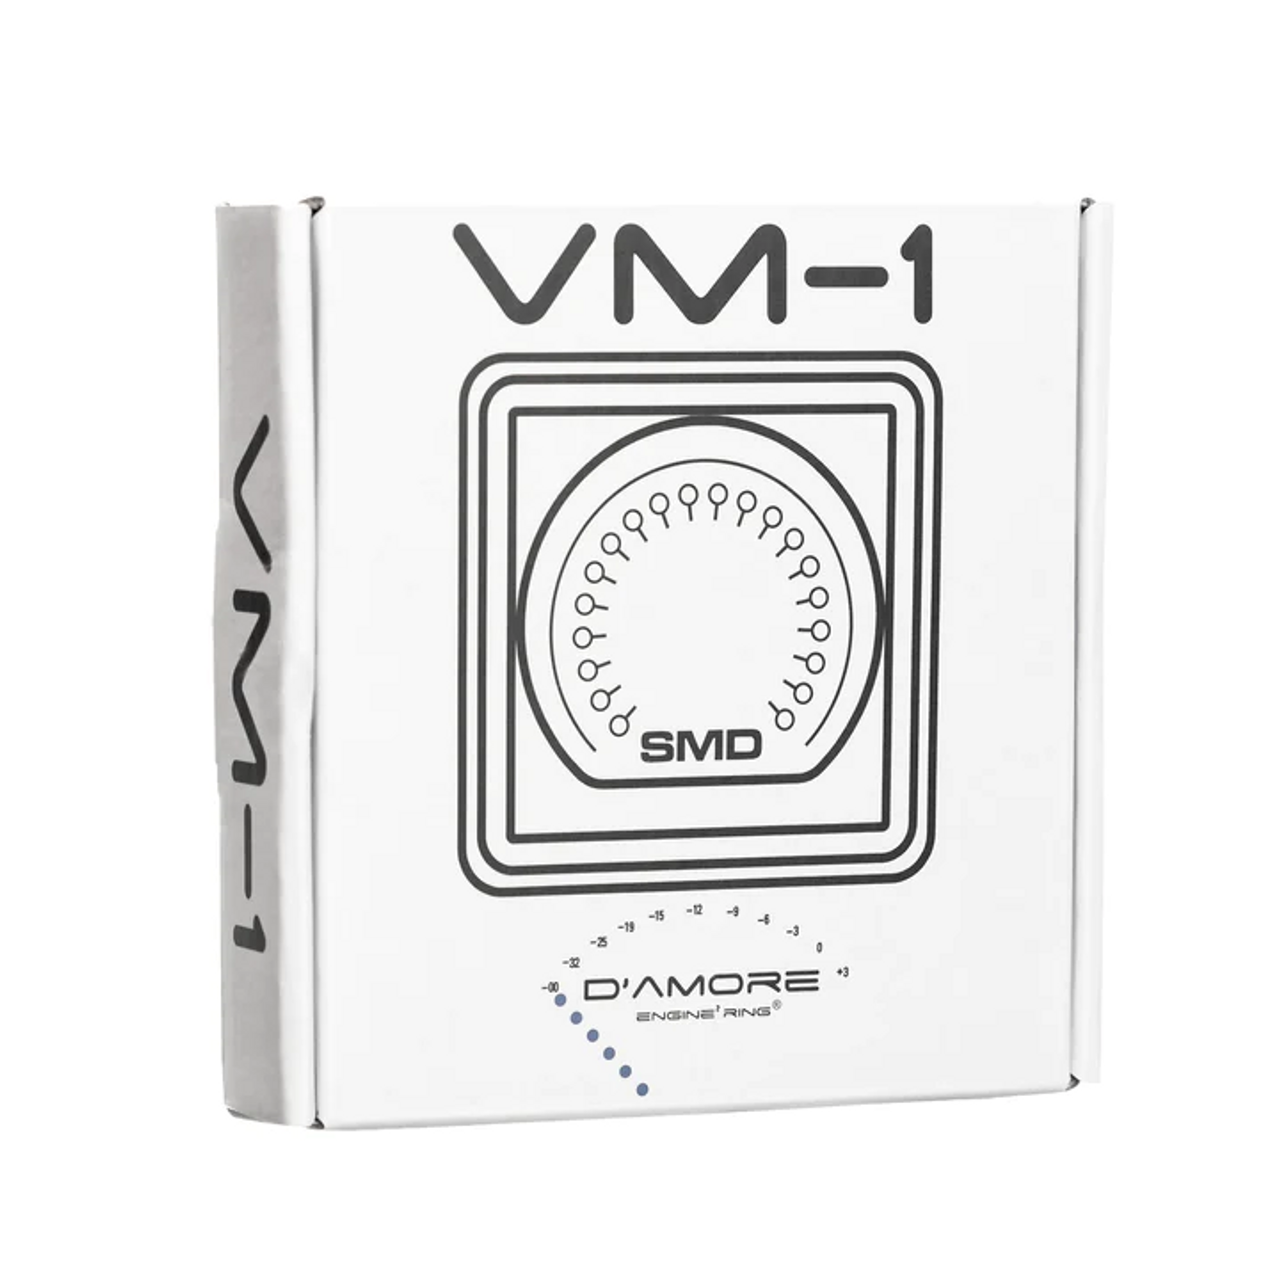 Steve Meade Designs SMD 12V Voltmeter SMD-VM-1